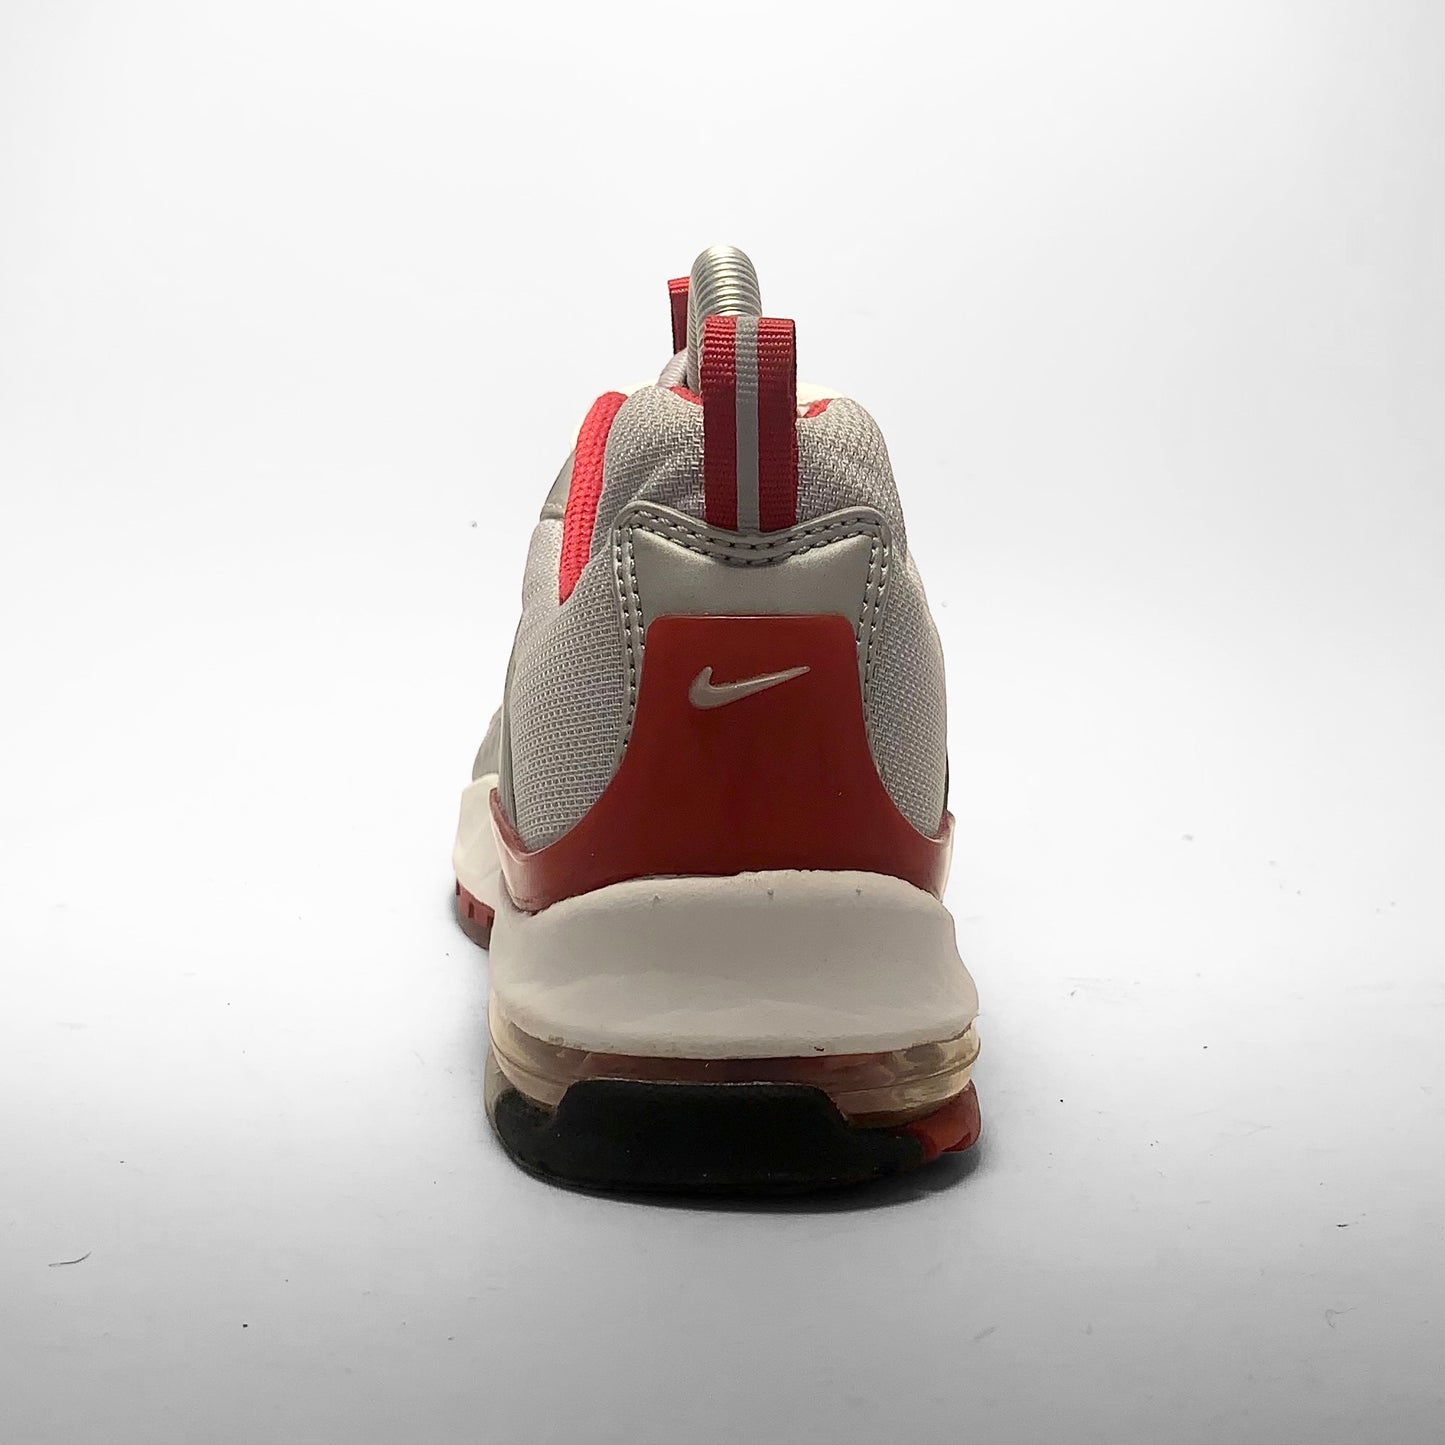 Nike Air Max 'Excite' - Samples (2002)